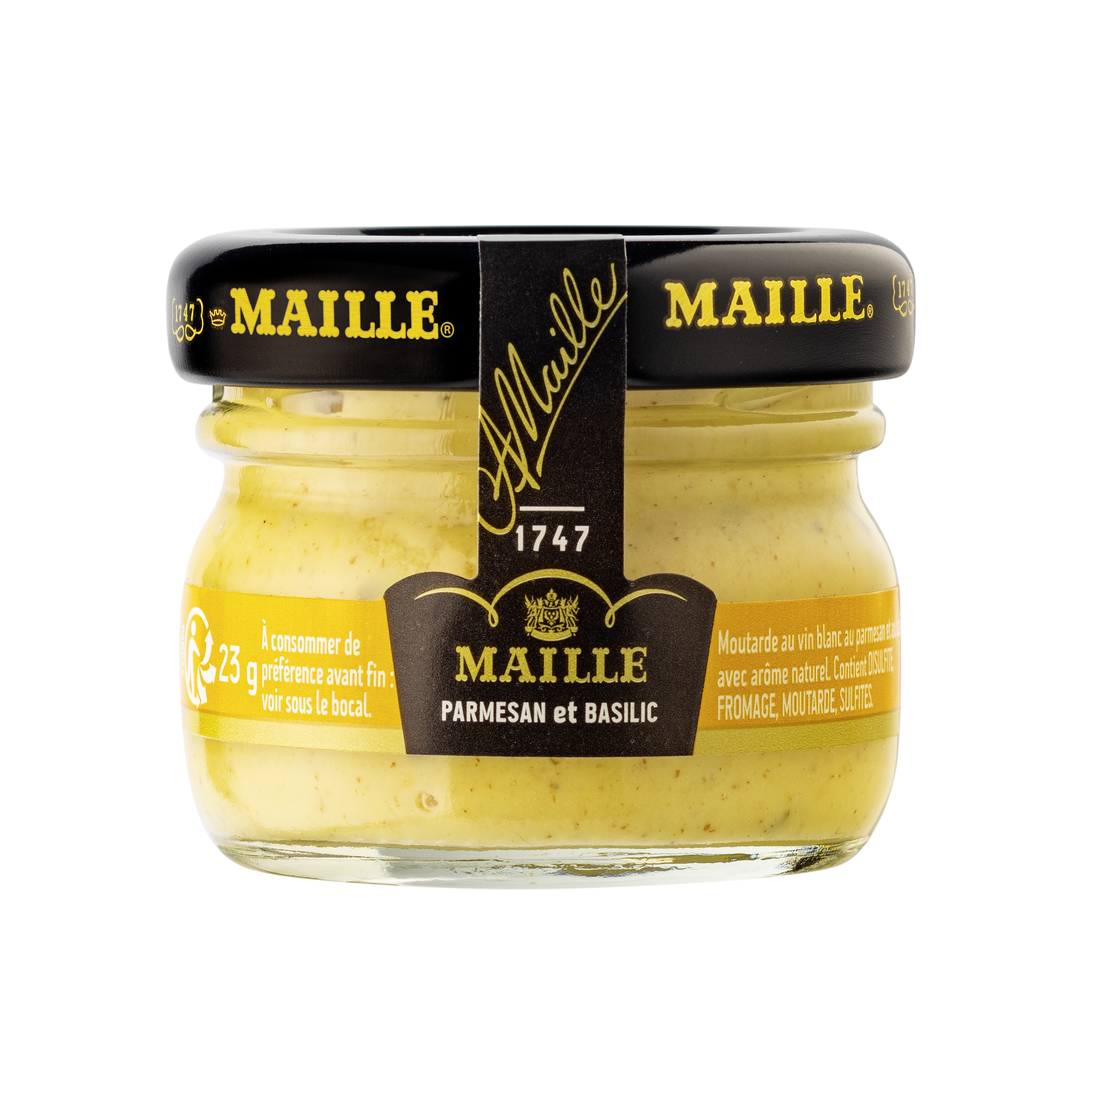 PACKSHOT - Maille - Mini bundle Parmesan et Basilic (1)